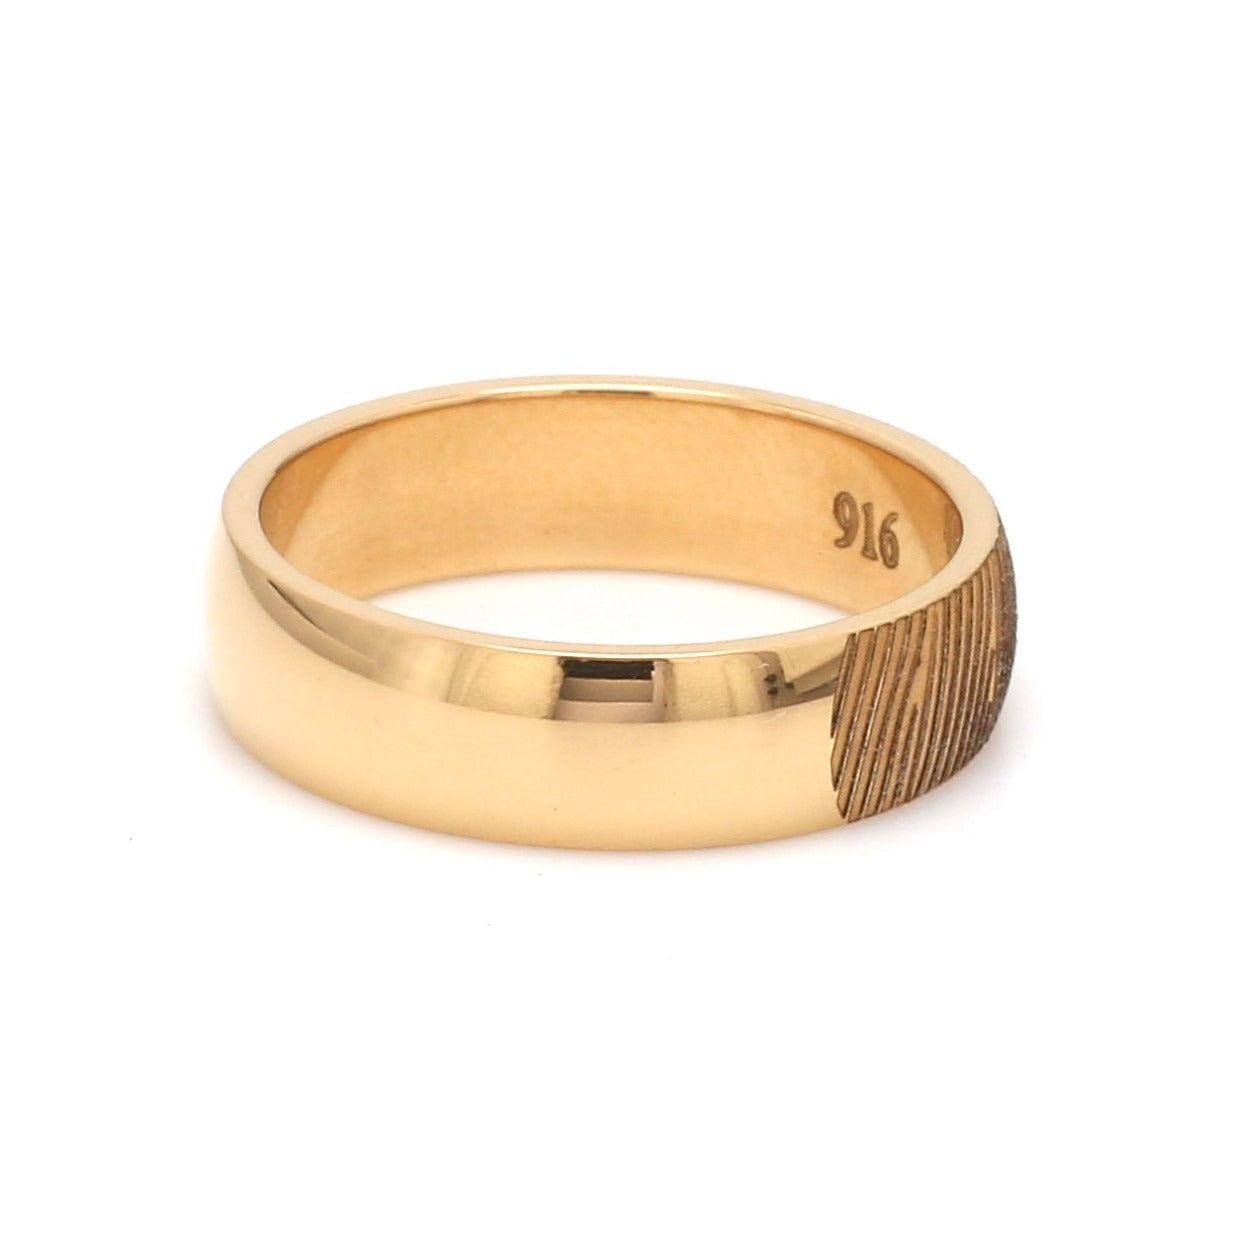 Gold Fingerprint Engraved Platinum Rings for Couples